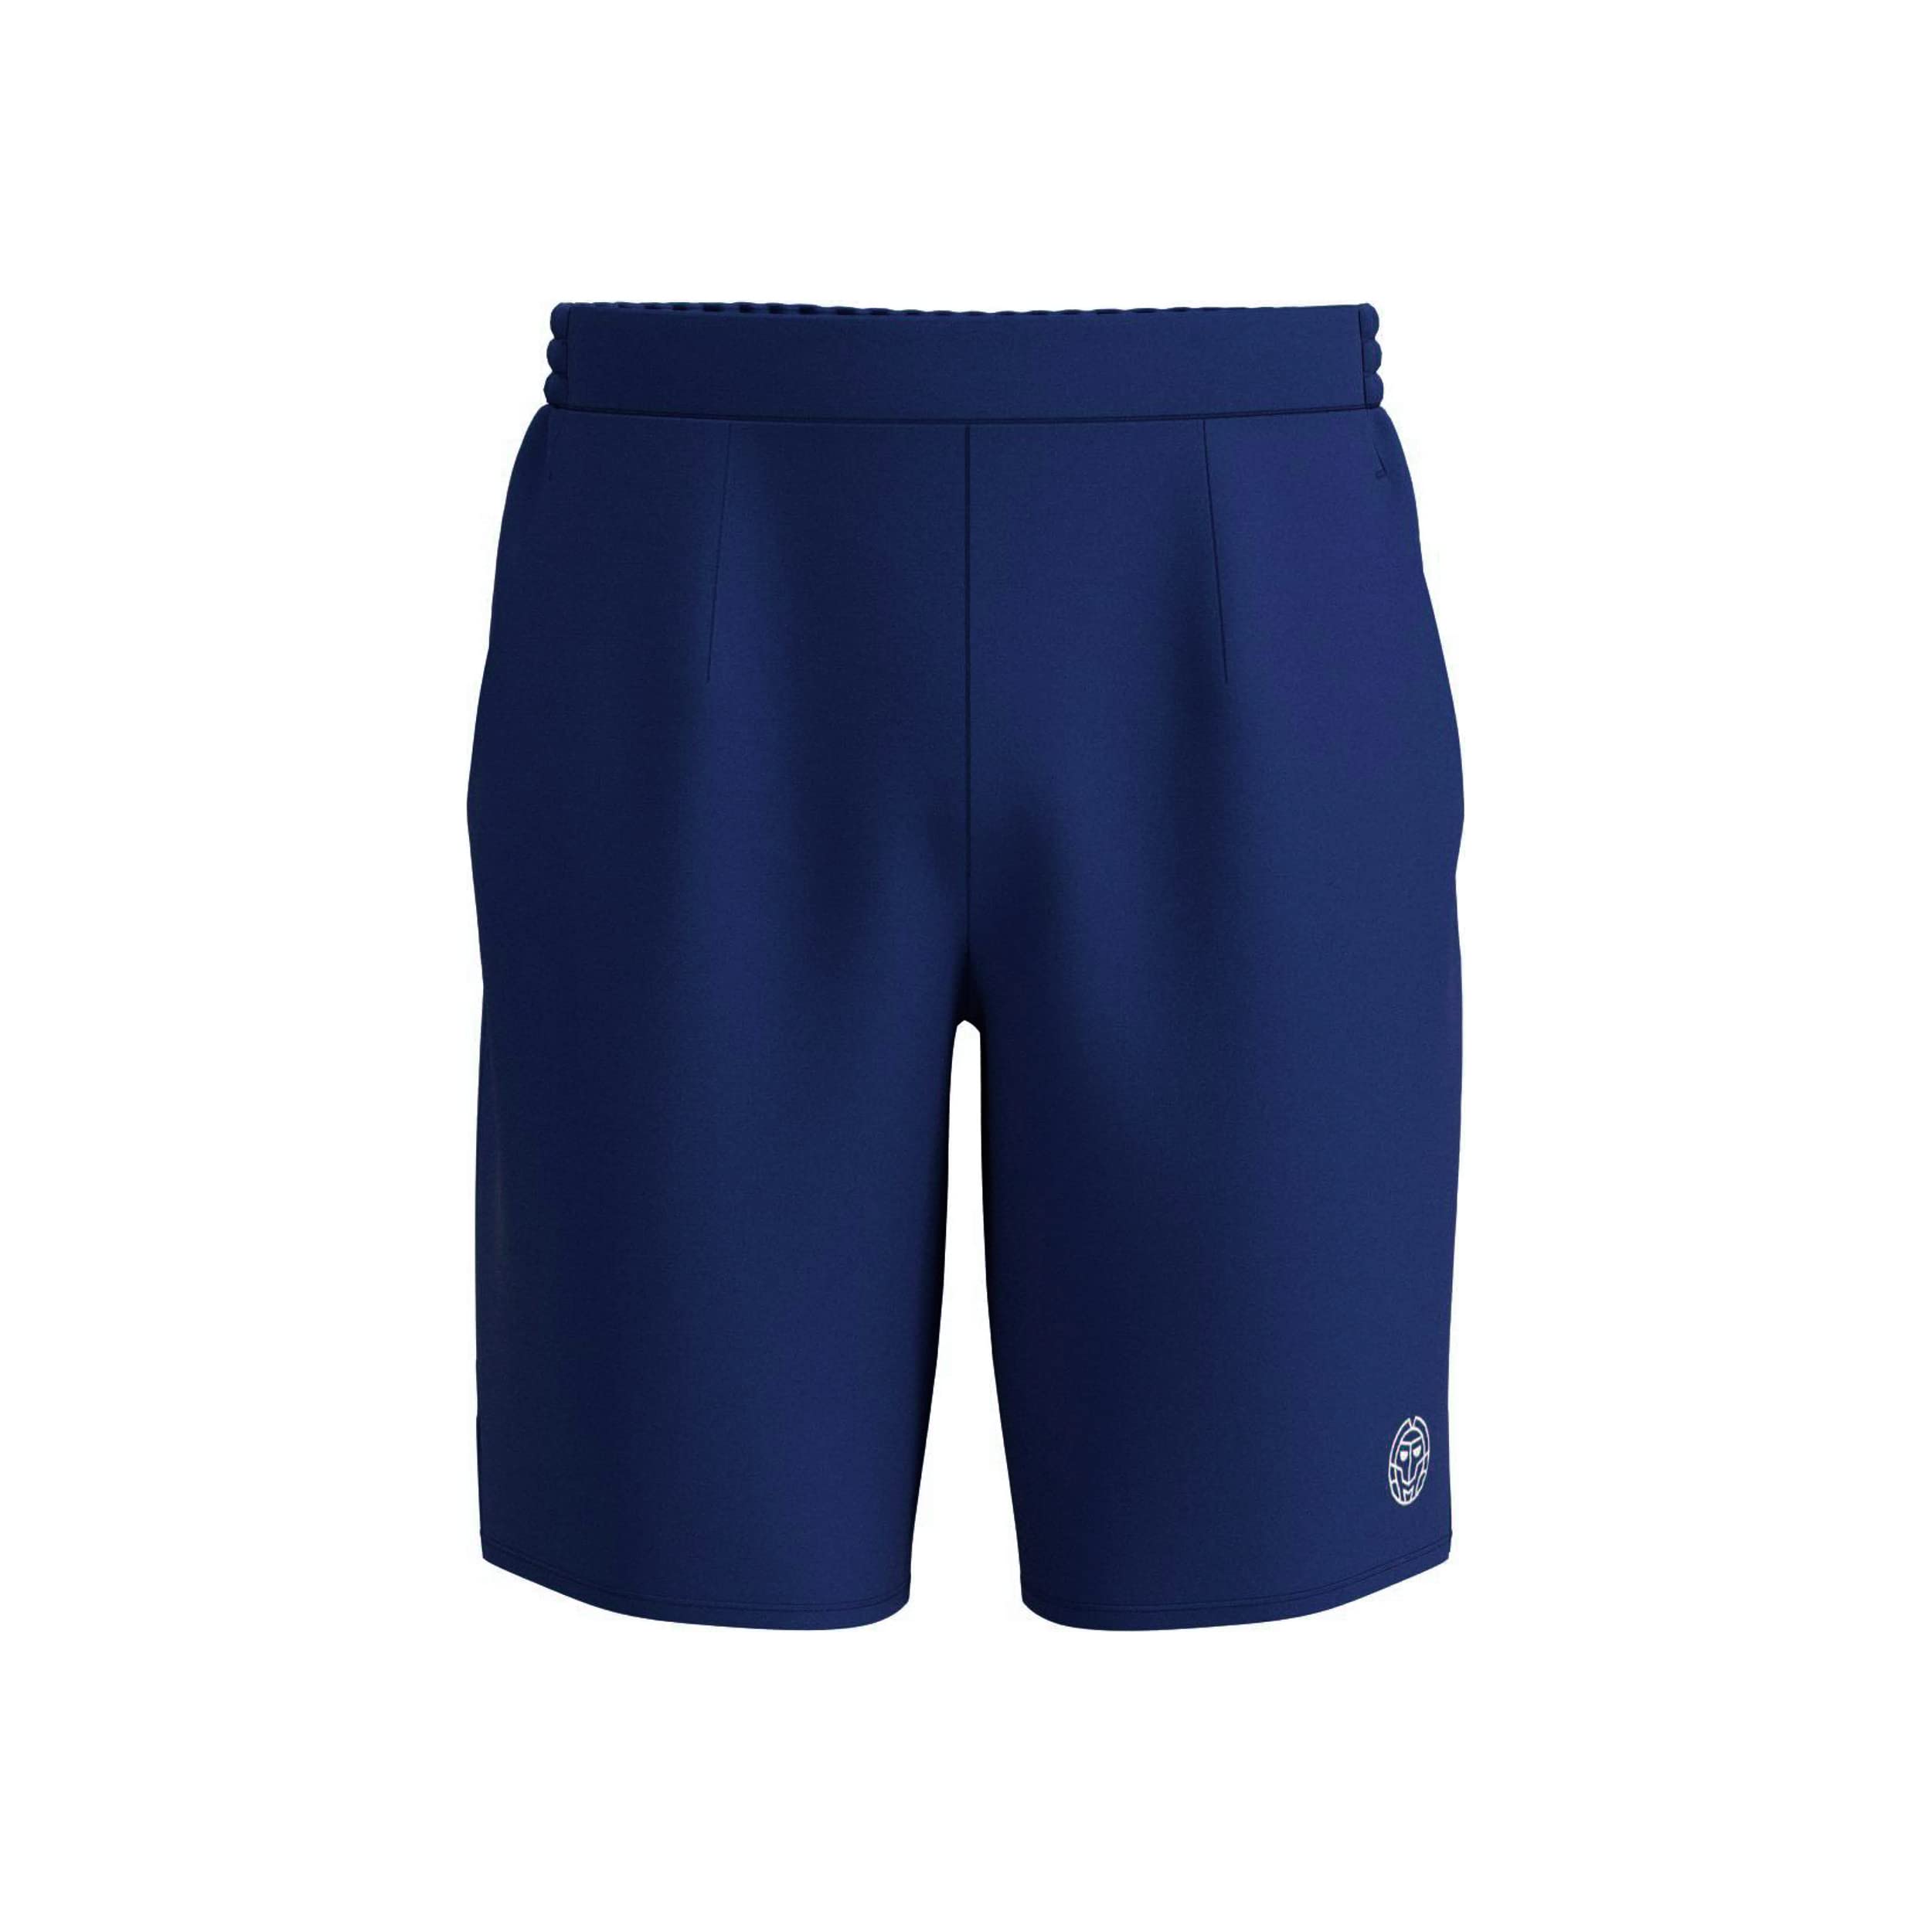 BIDI BADU Herren Crew 9Inch Shorts - Dark Blue, Größe:L